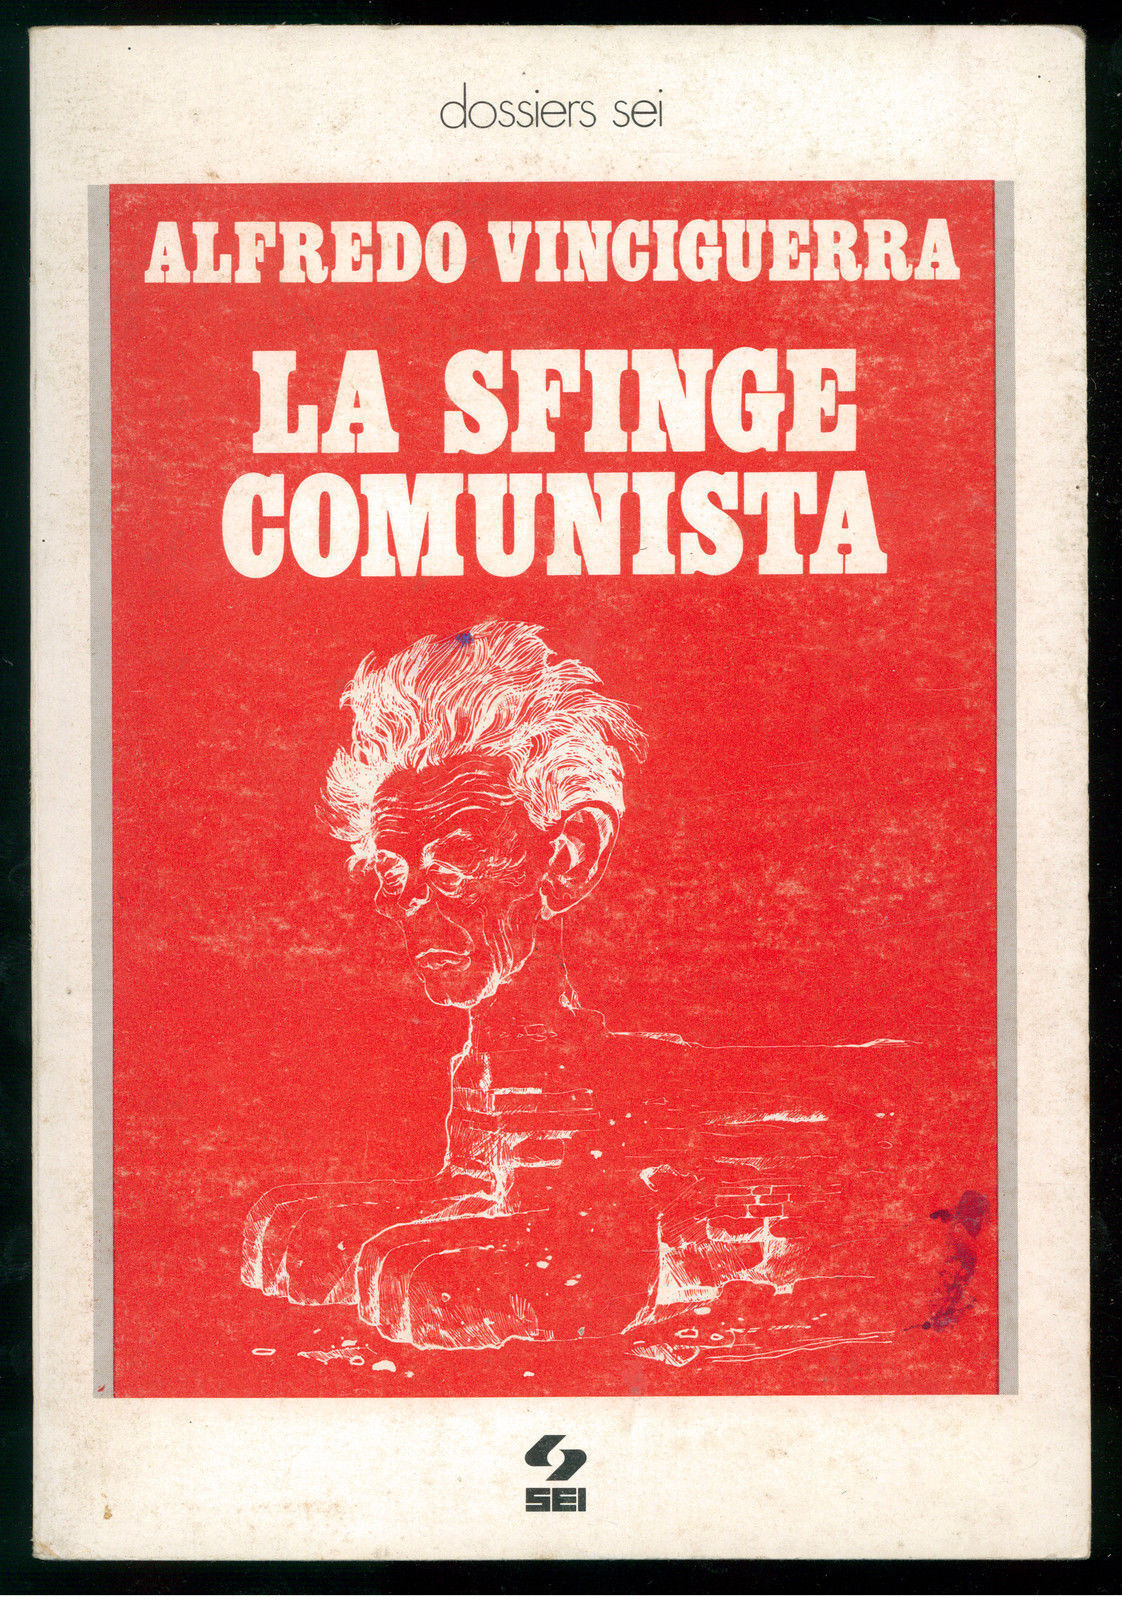 VINCIGUERRA ALFREDO - LA SFINGE COMUNISTA - SEI - 1977 DOSSIERS